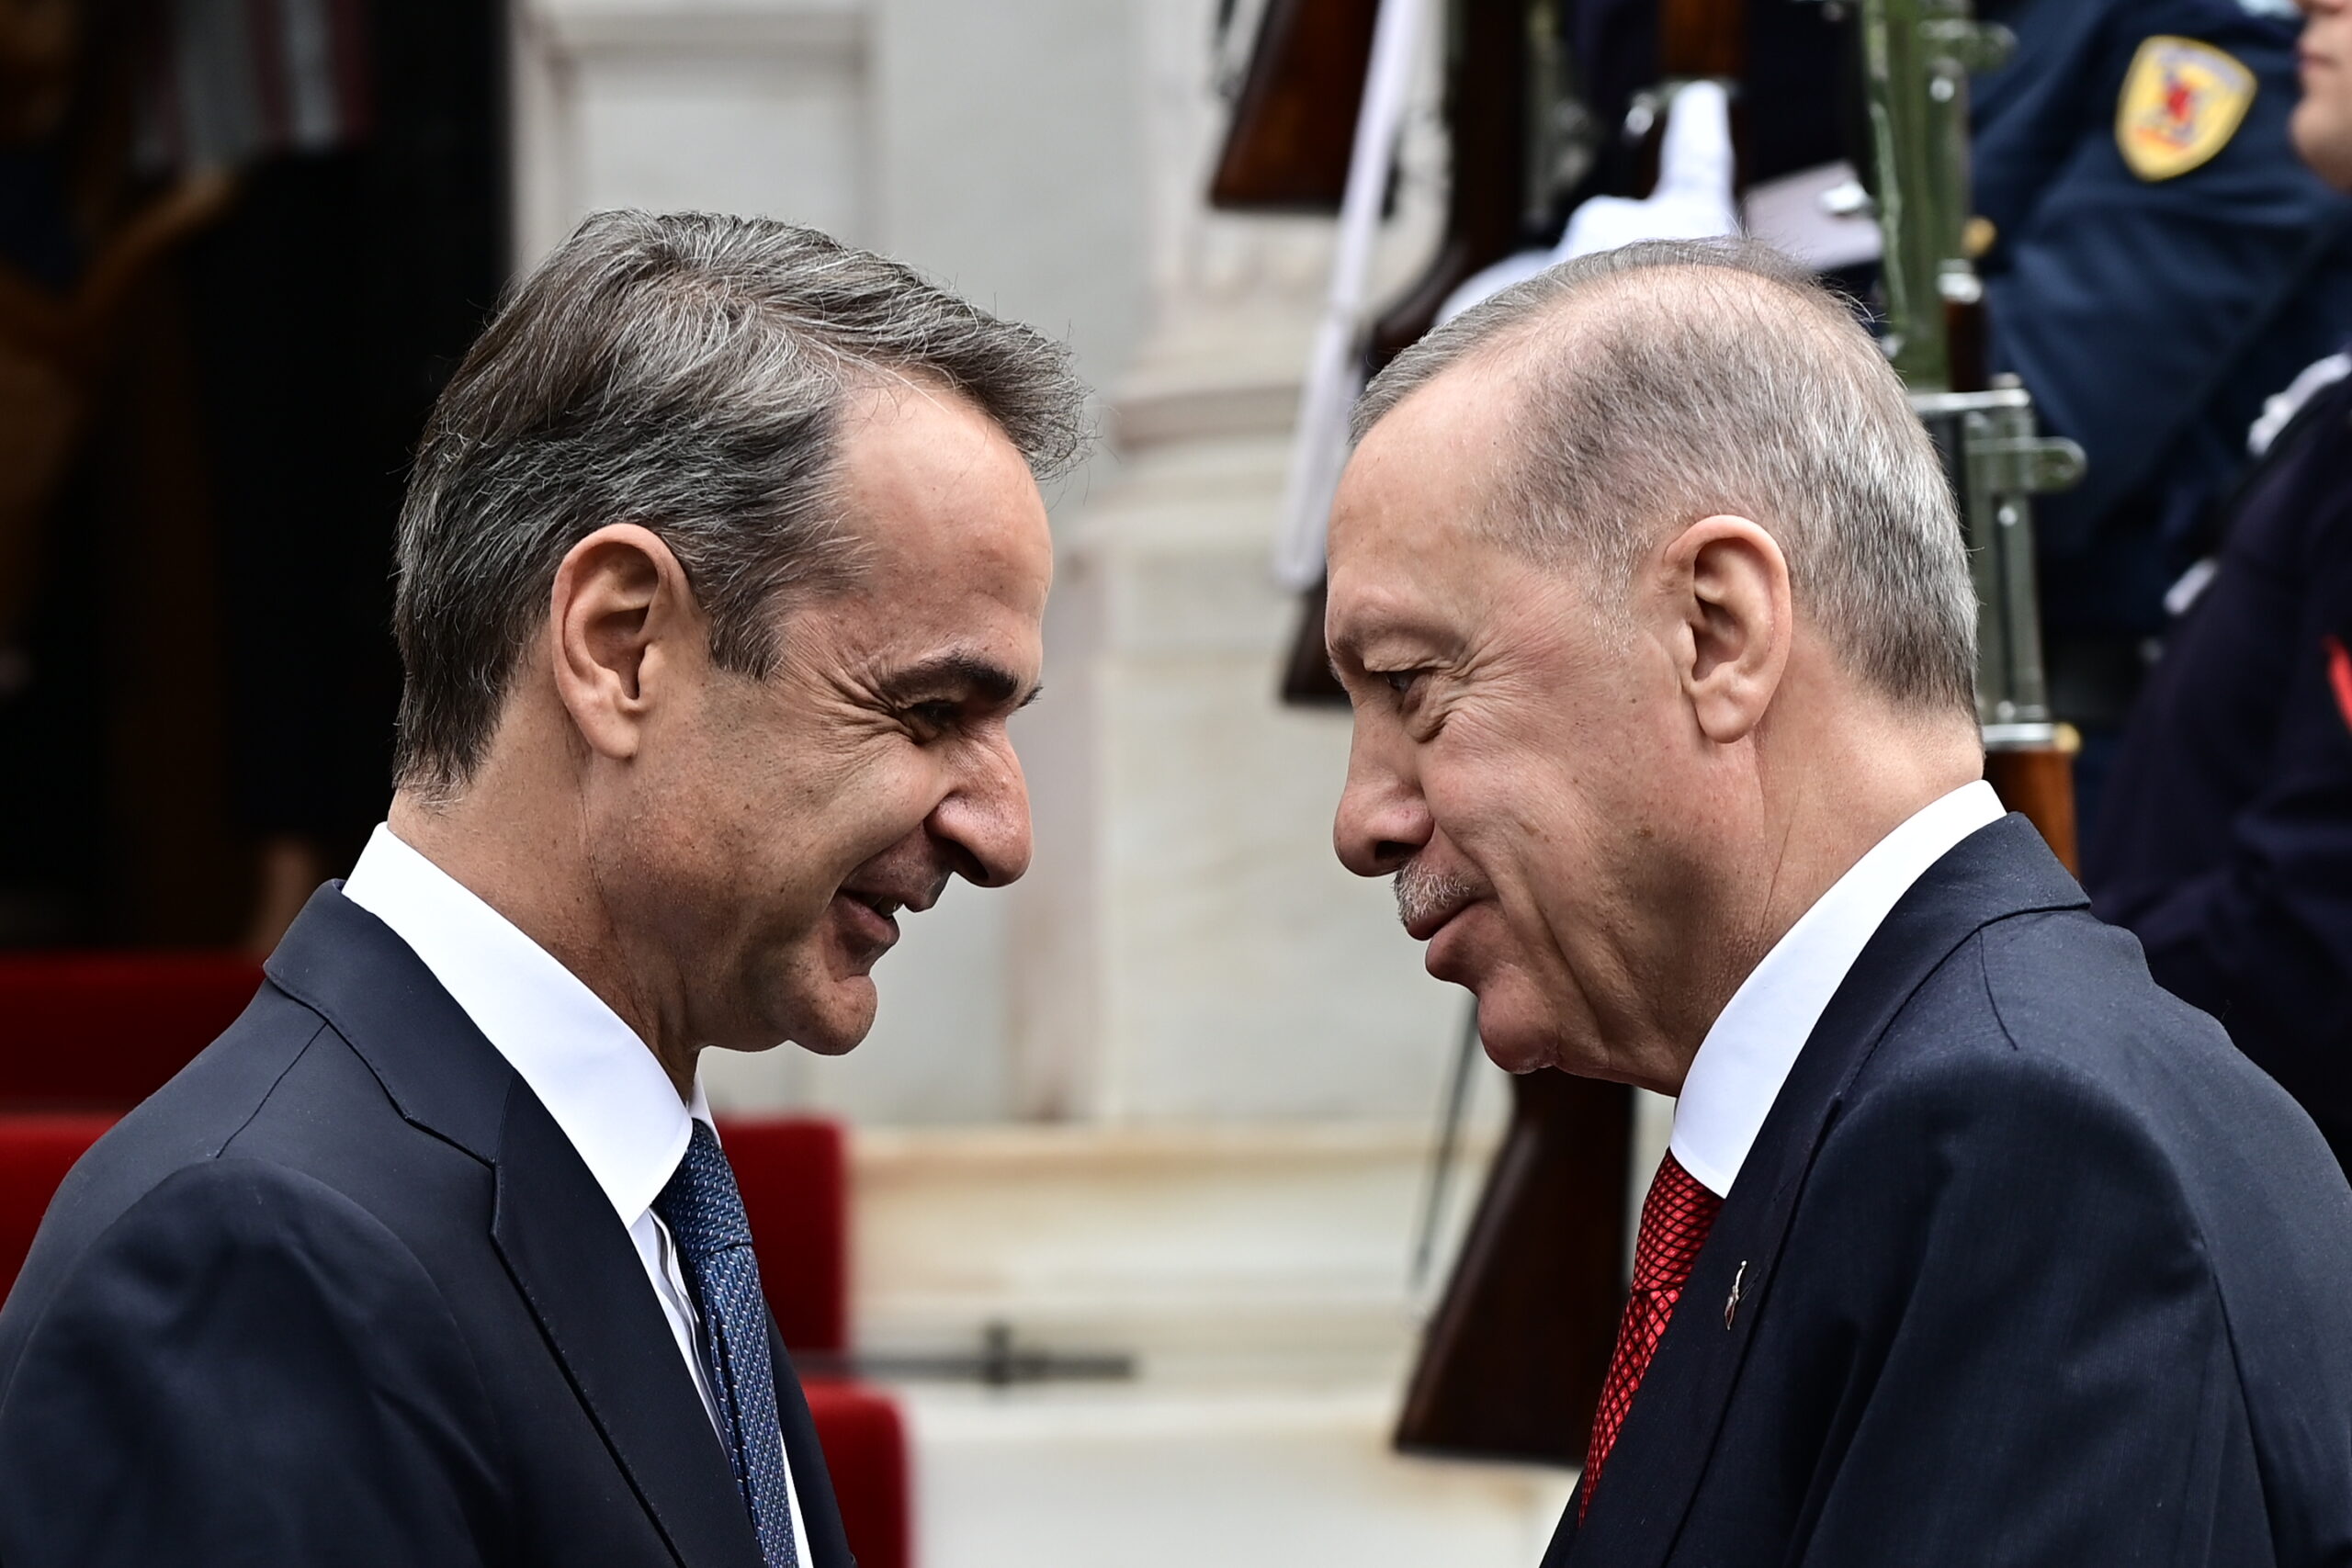 Πρώτο θέμα στα τουρκικά ΜΜΕ η επίσκεψη Ερντογάν στην Αθήνα – Τα σχόλια των διεθνών Μέσων